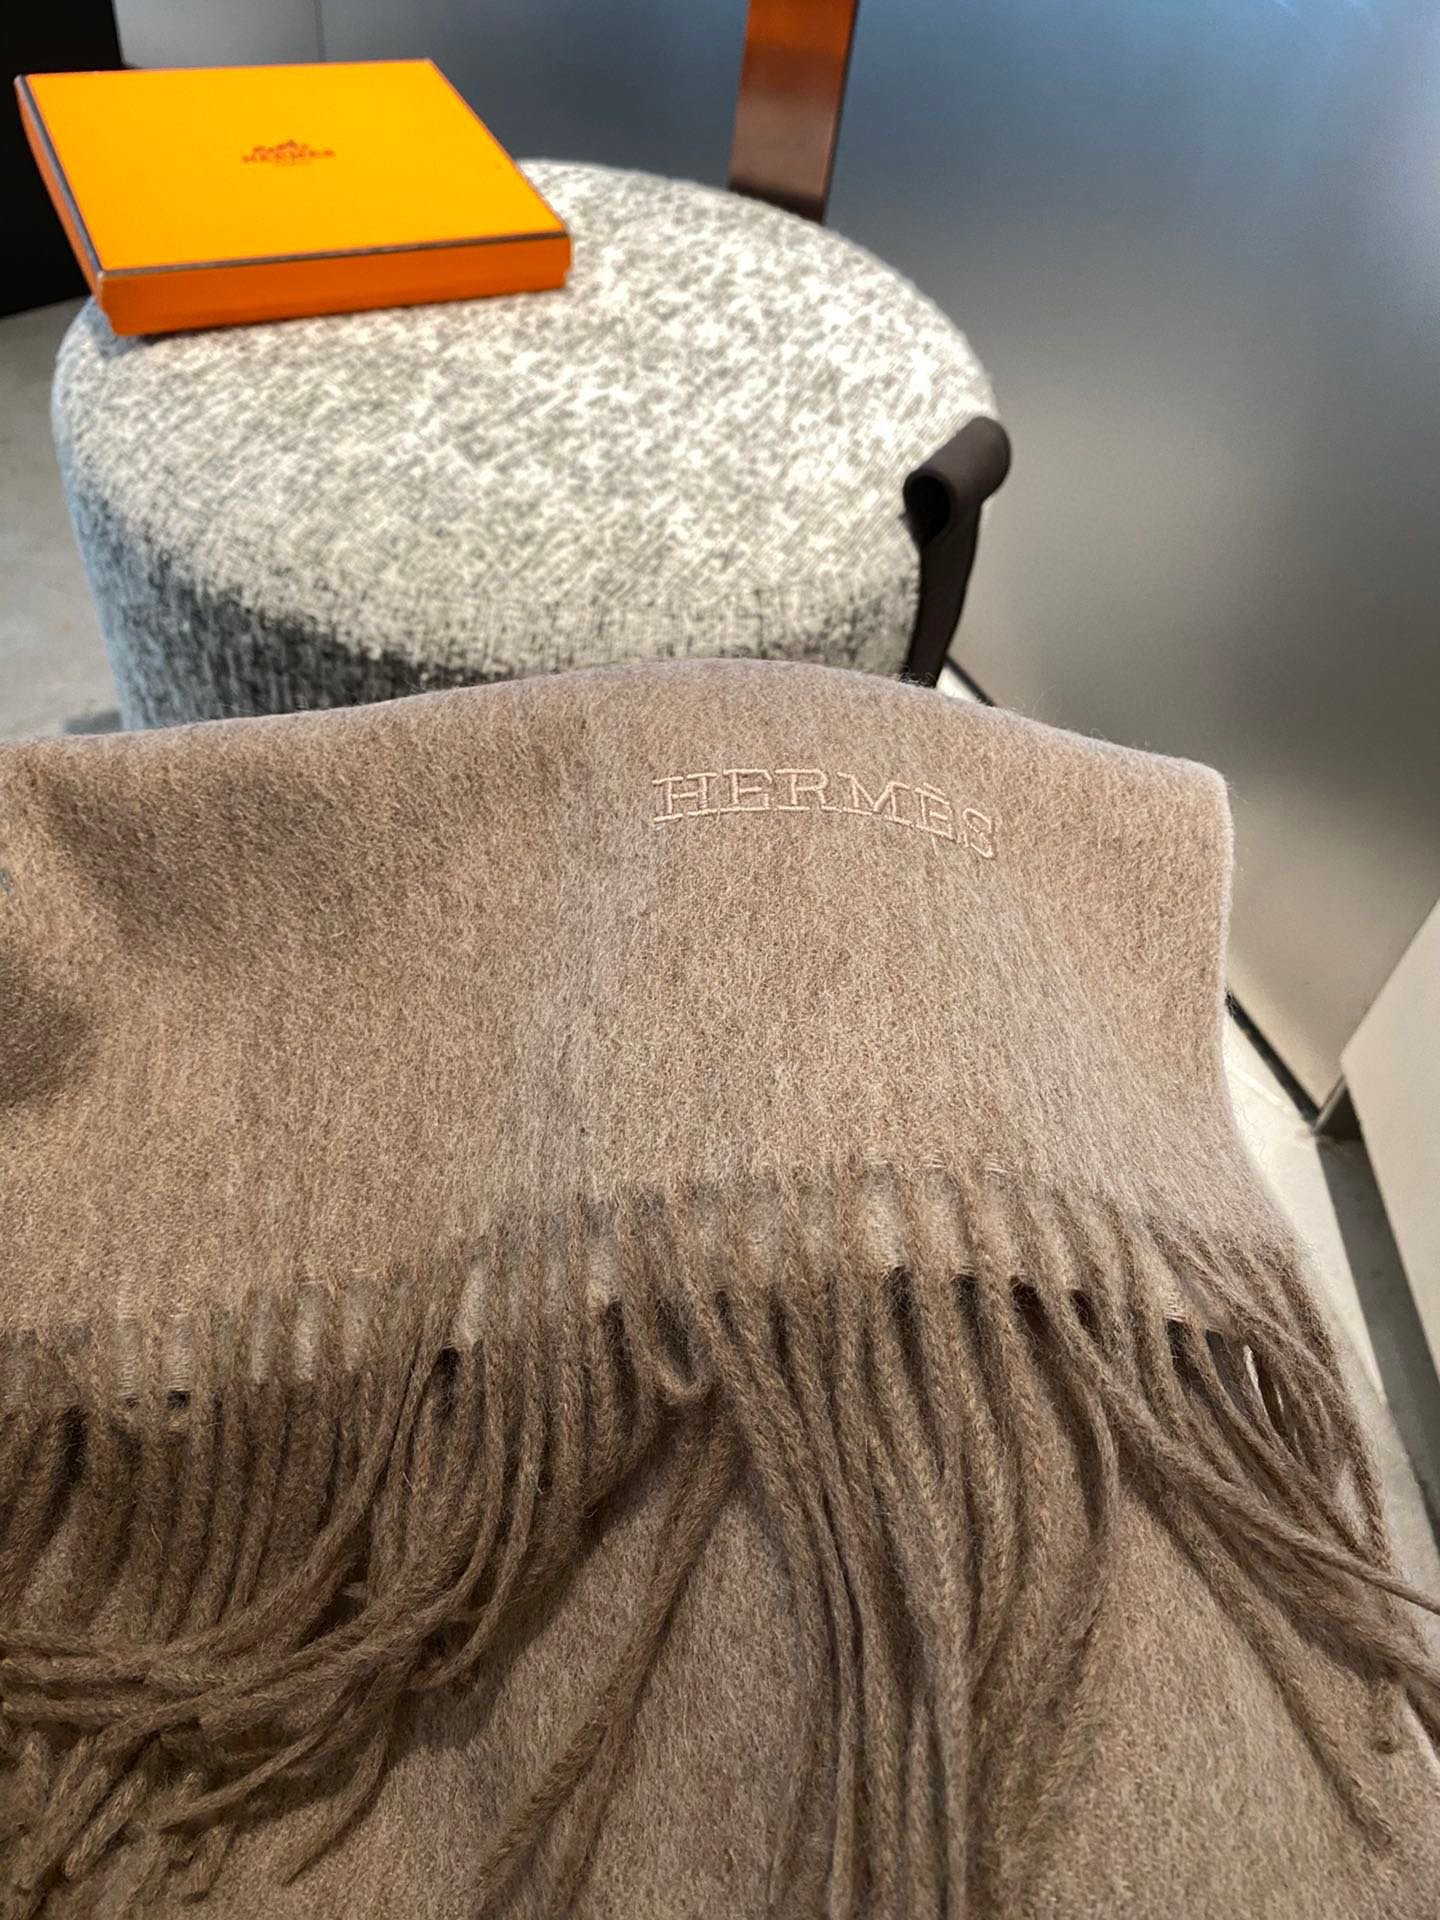 PHERMES爱马仕2023巴黎时装展商务男士女士通用双面羊绒披肩代工厂臻选上乘的超细羊绒纤维进行纯手工